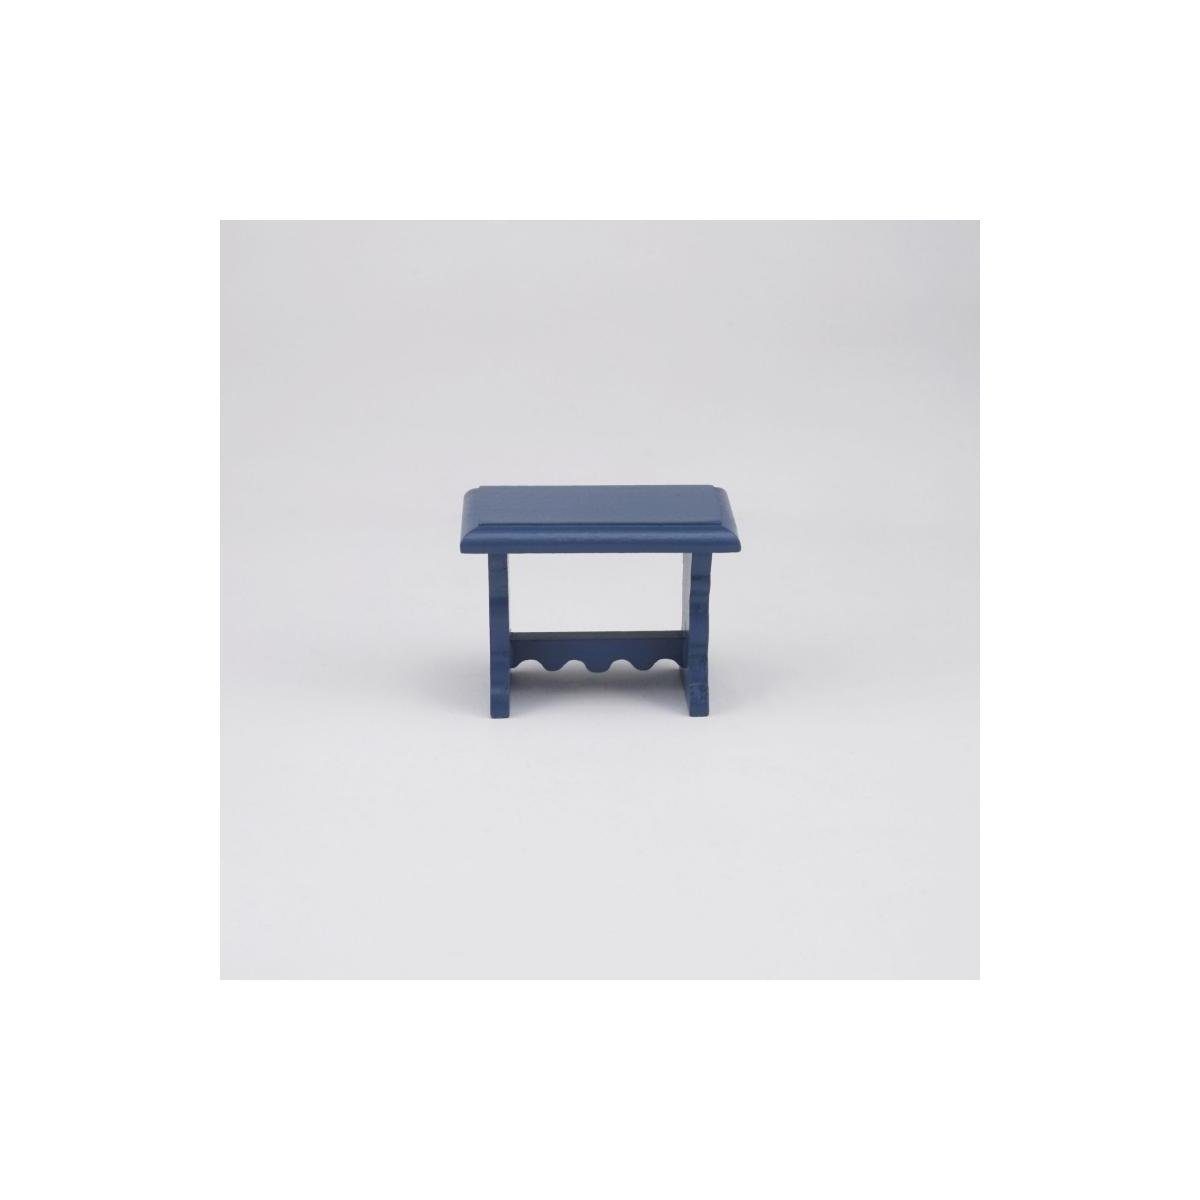 Reutter Porzellan Dekofigur Beistelltisch, - 001.505/9 kleiner blauer leer Miniatur